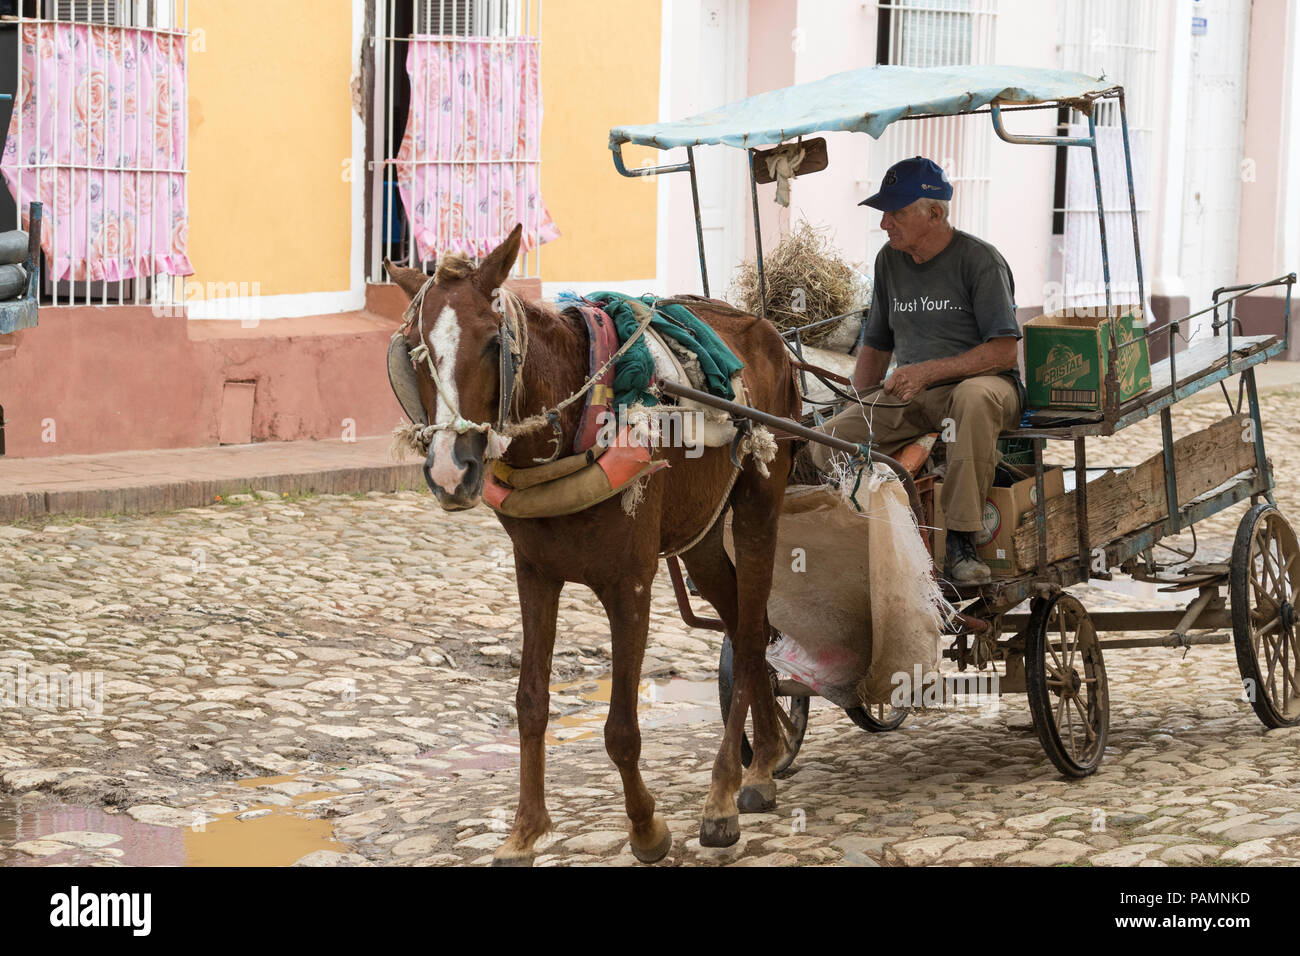 Ein Pferdefuhrwerk lokal bekannt als Coche in der UNESCO Weltkulturerbe Stadt Trinidad, Kuba. Stockfoto